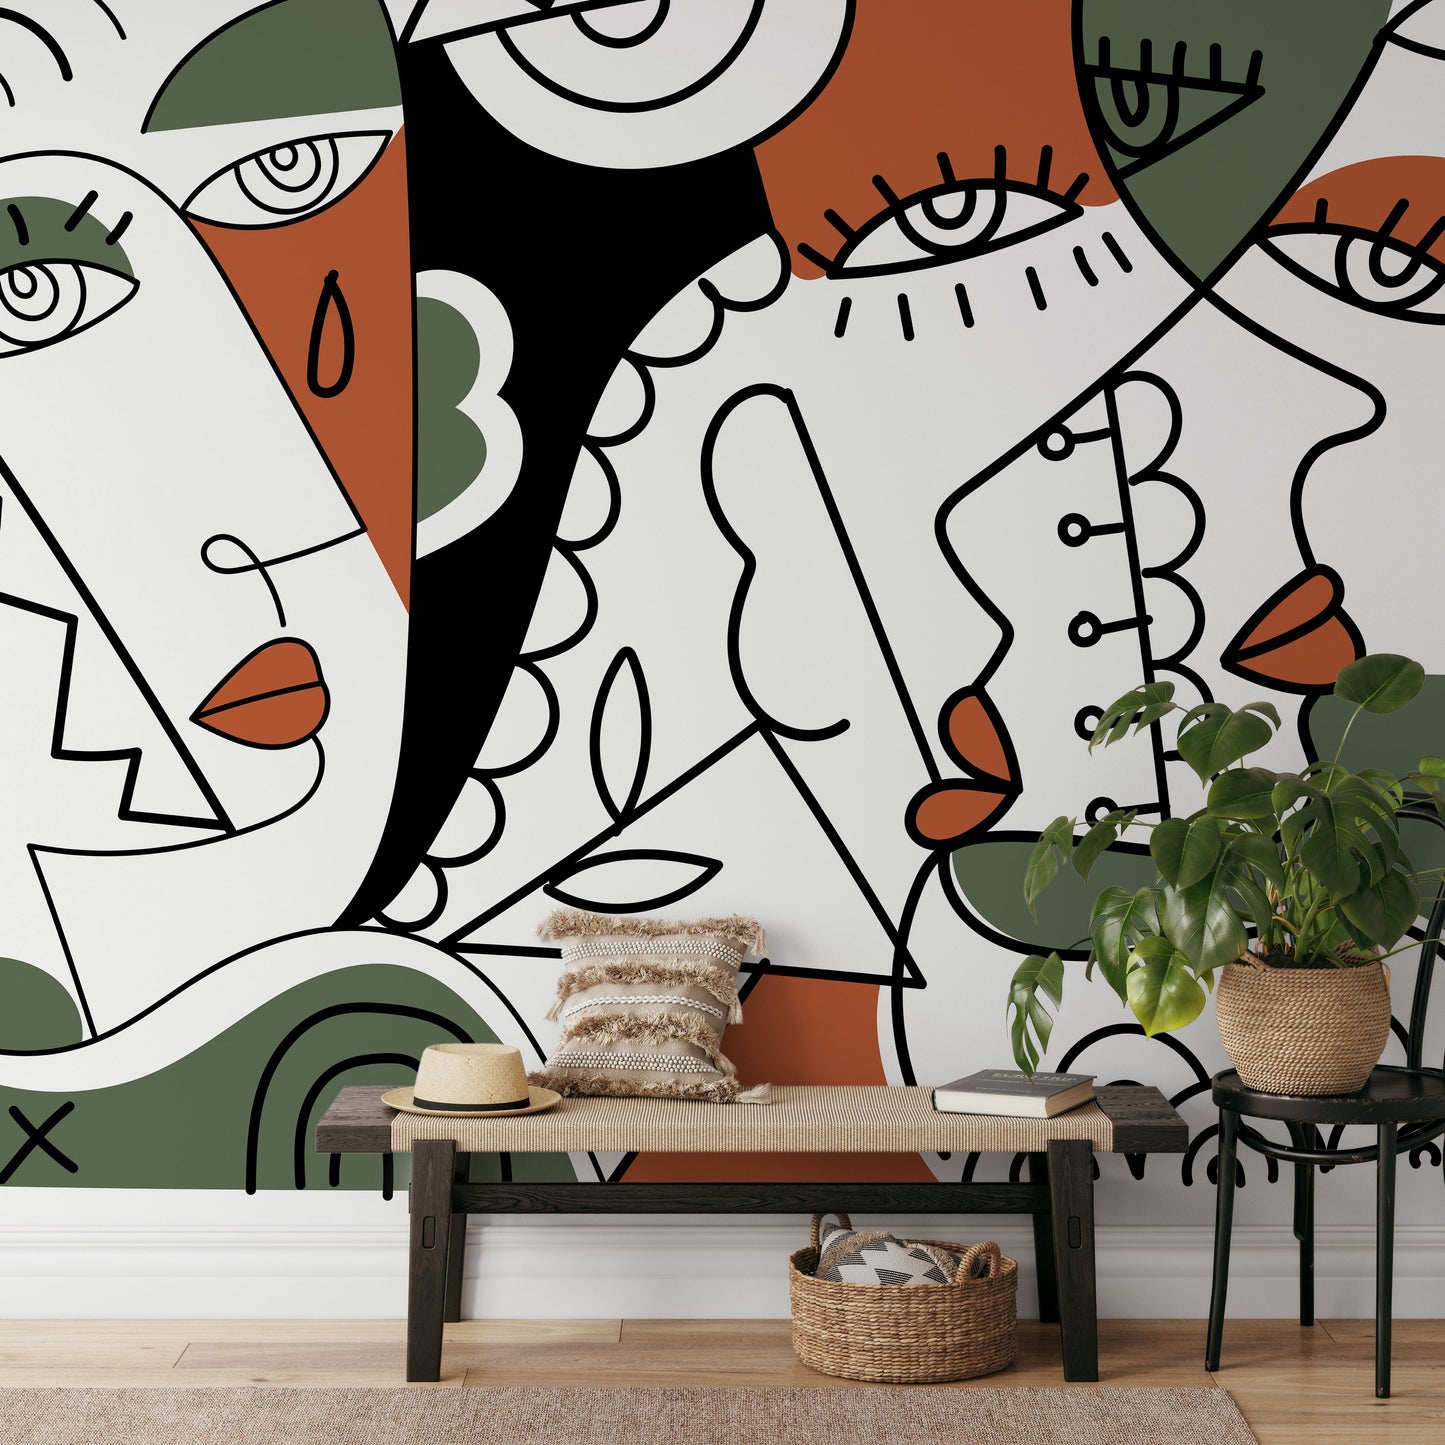 Abstract Cubism Art Wallpaper Modern Mural Peel and Stick Wallpaper Home Decor - D564